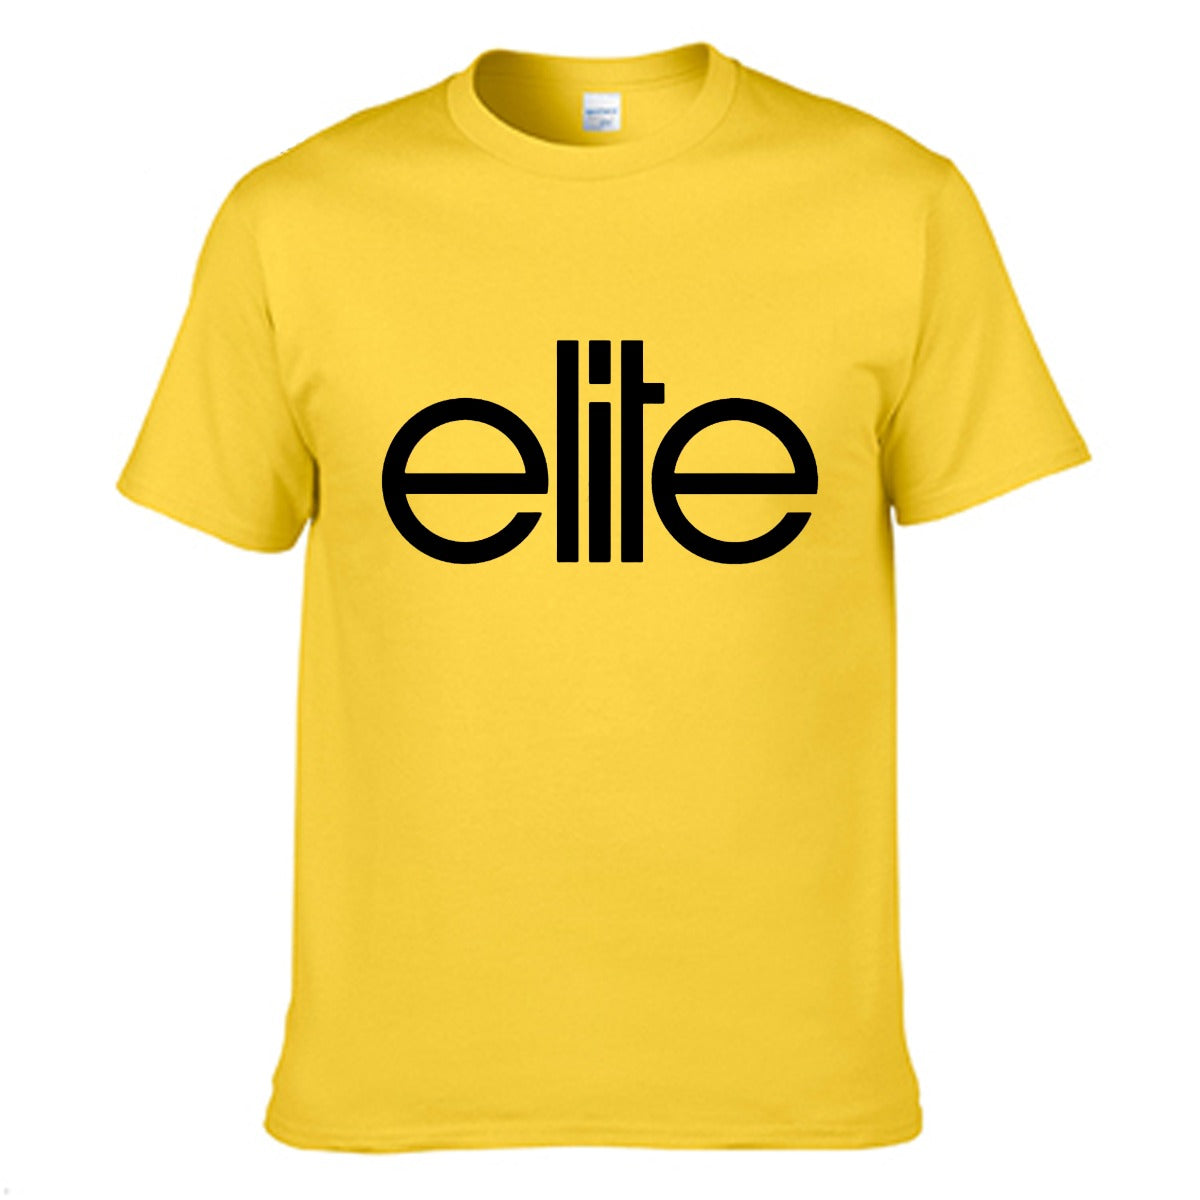 Florida Elite Men's T-shirt (100% Cotton) - T0361